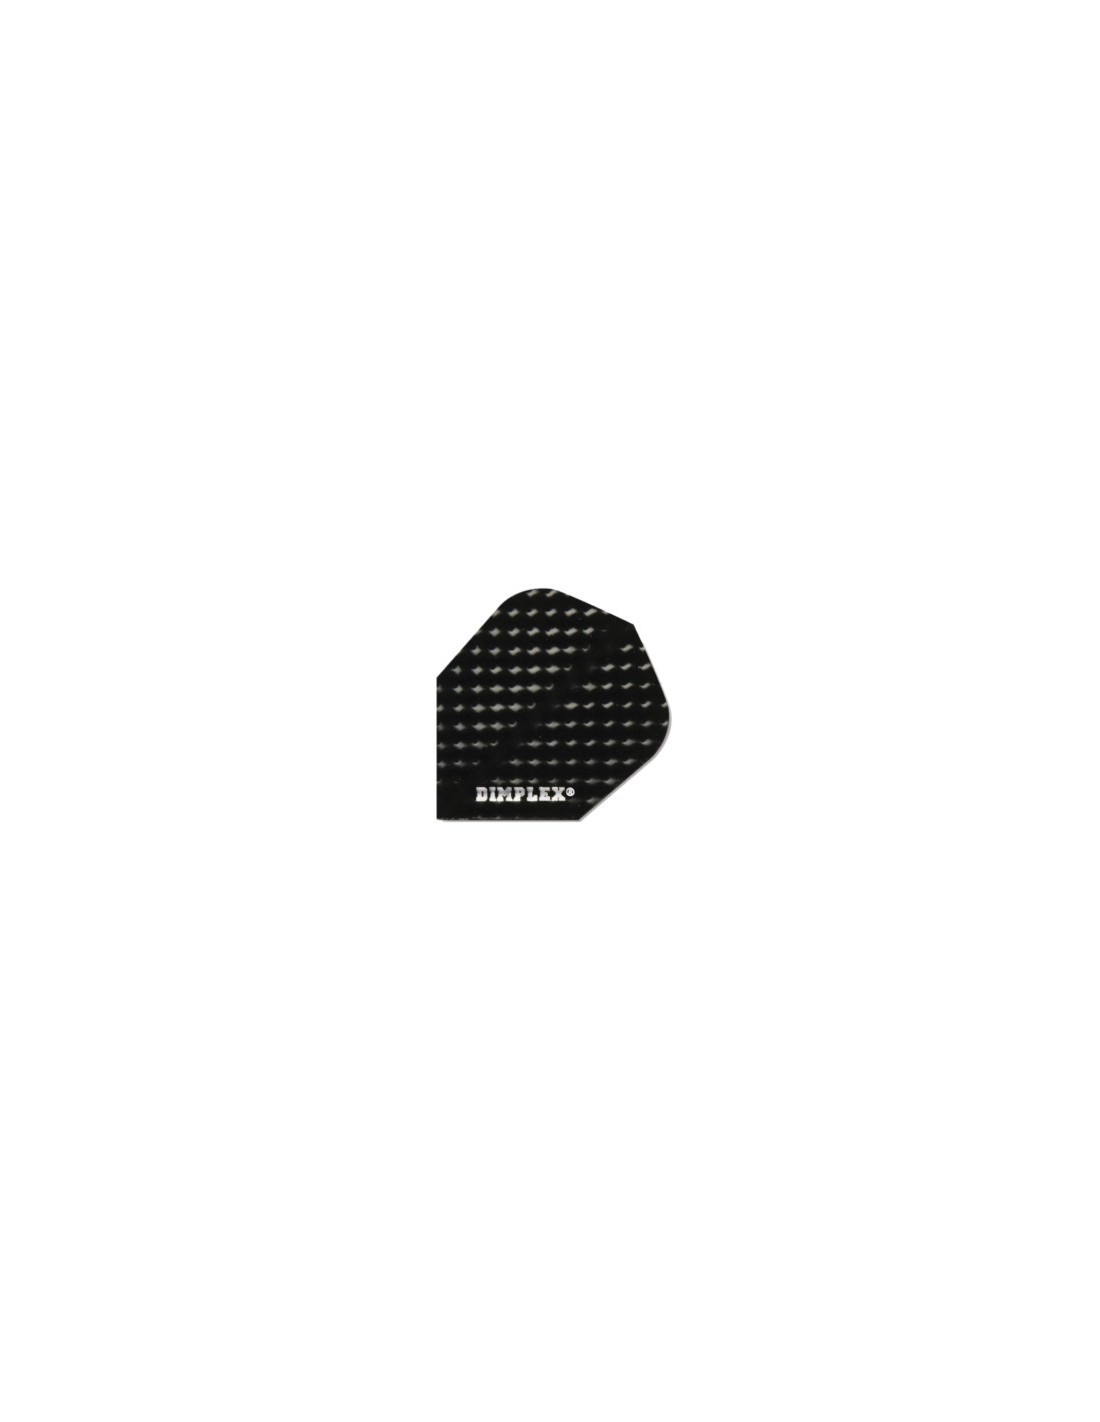 Pack de 3 Aletas Dimplex de color Negro para Dardos - Bazar